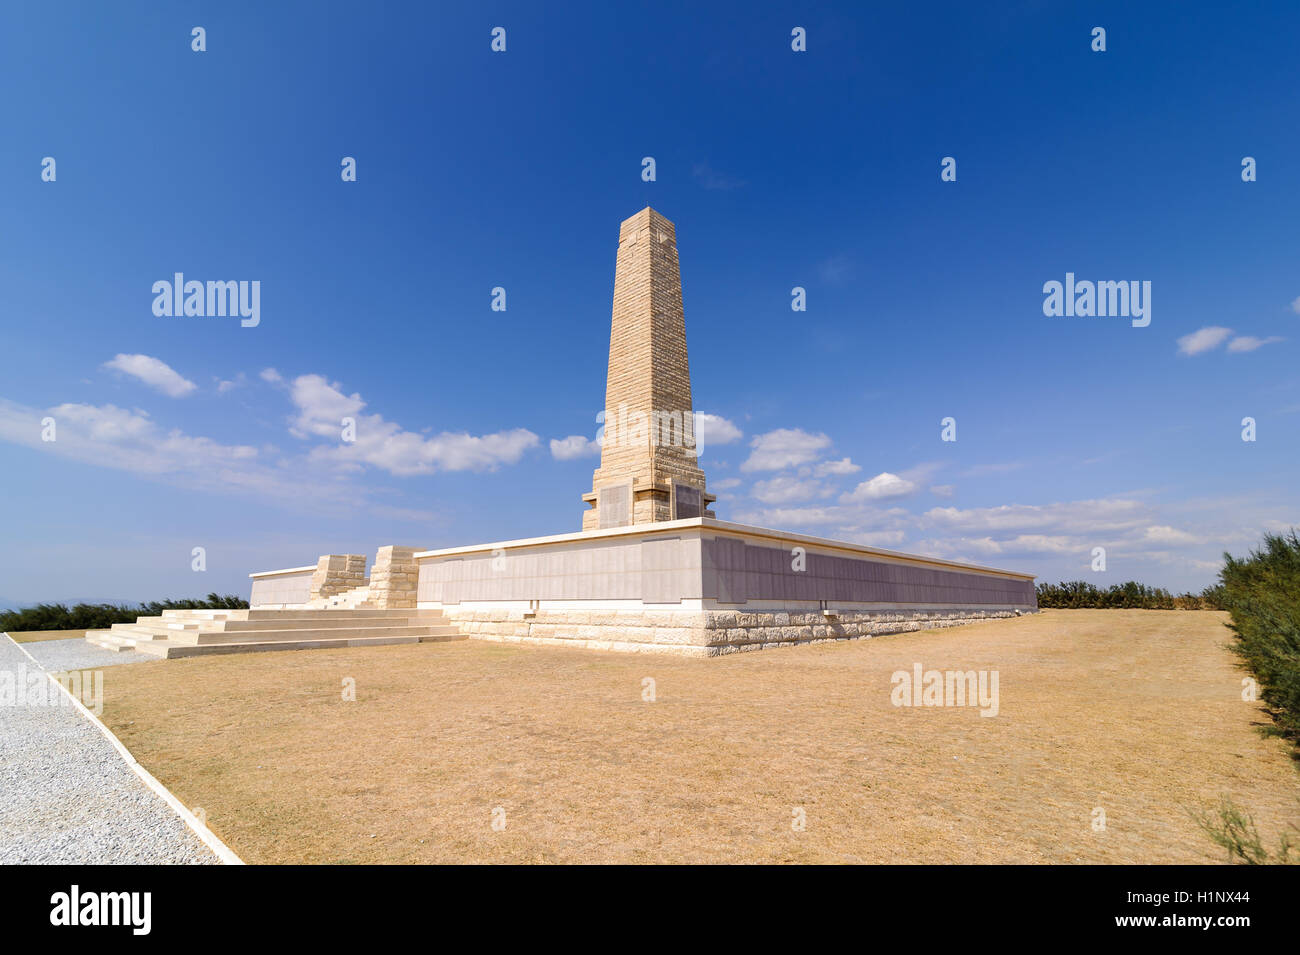 Helles Memorial sert la double fonction de bataille du Commonwealth pour la campagne de Gallipoli memorial Banque D'Images